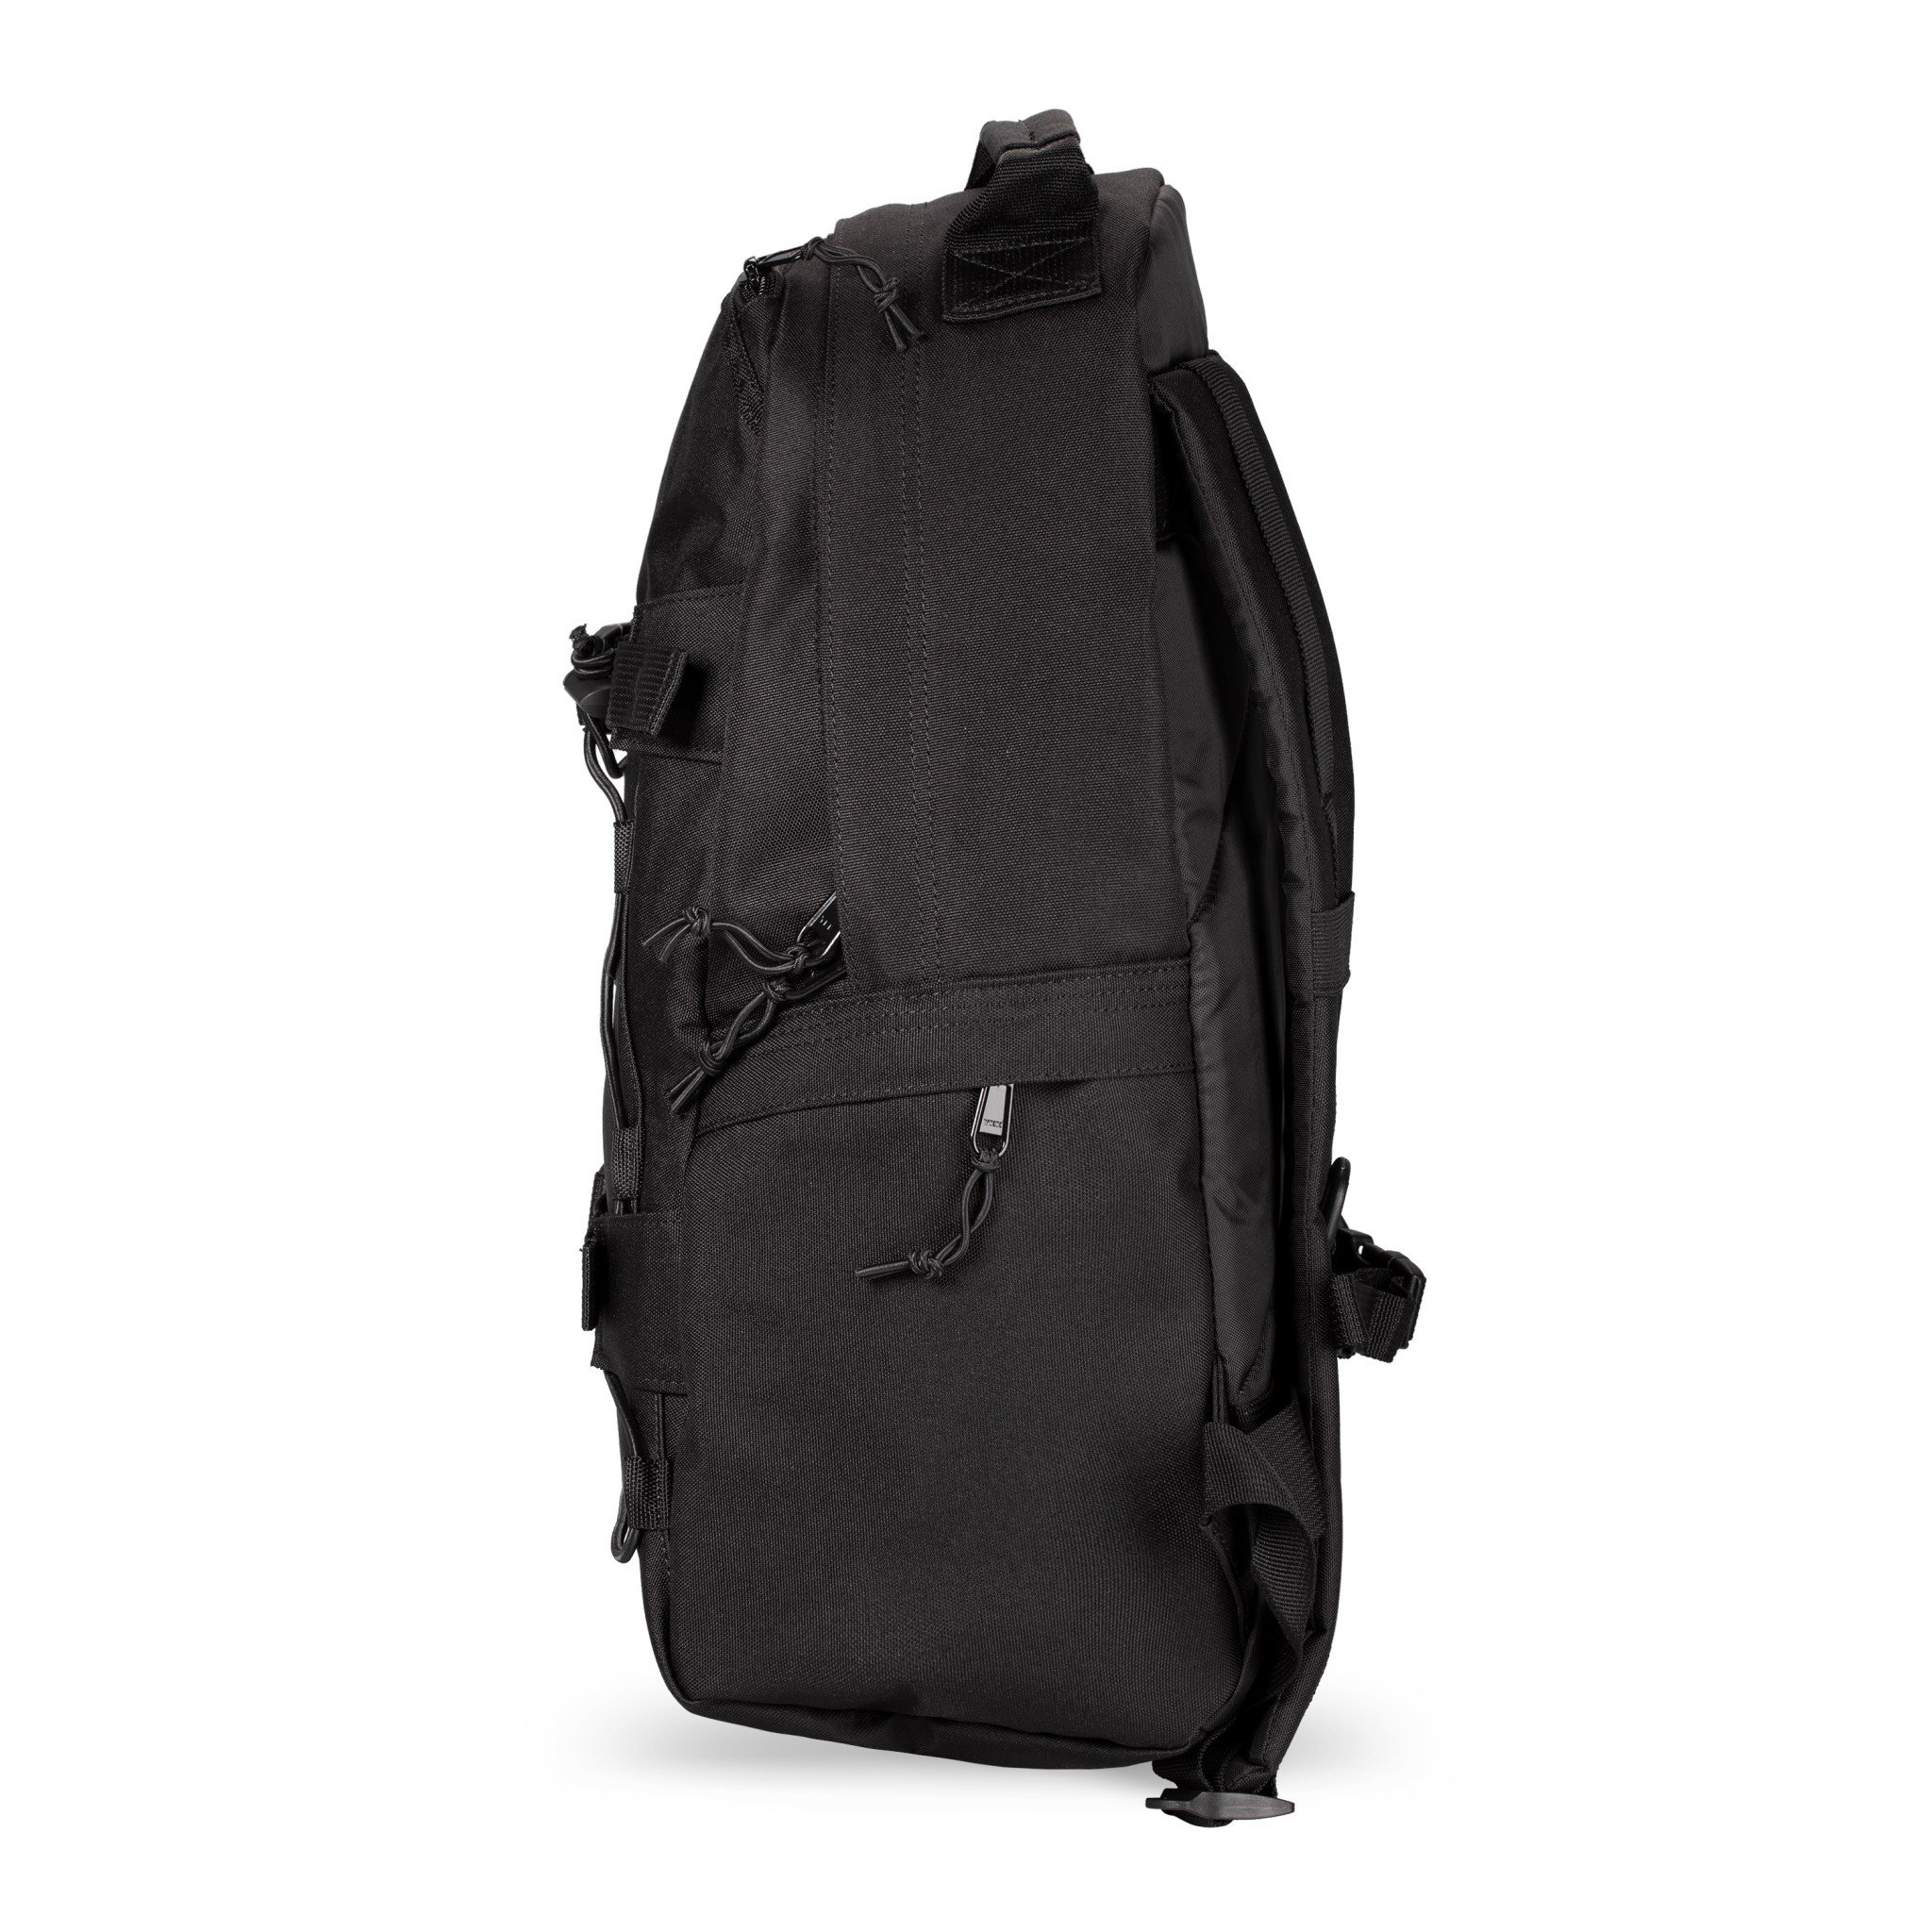 Carhartt WIP Kickflip Backpack in Black - Now or Never